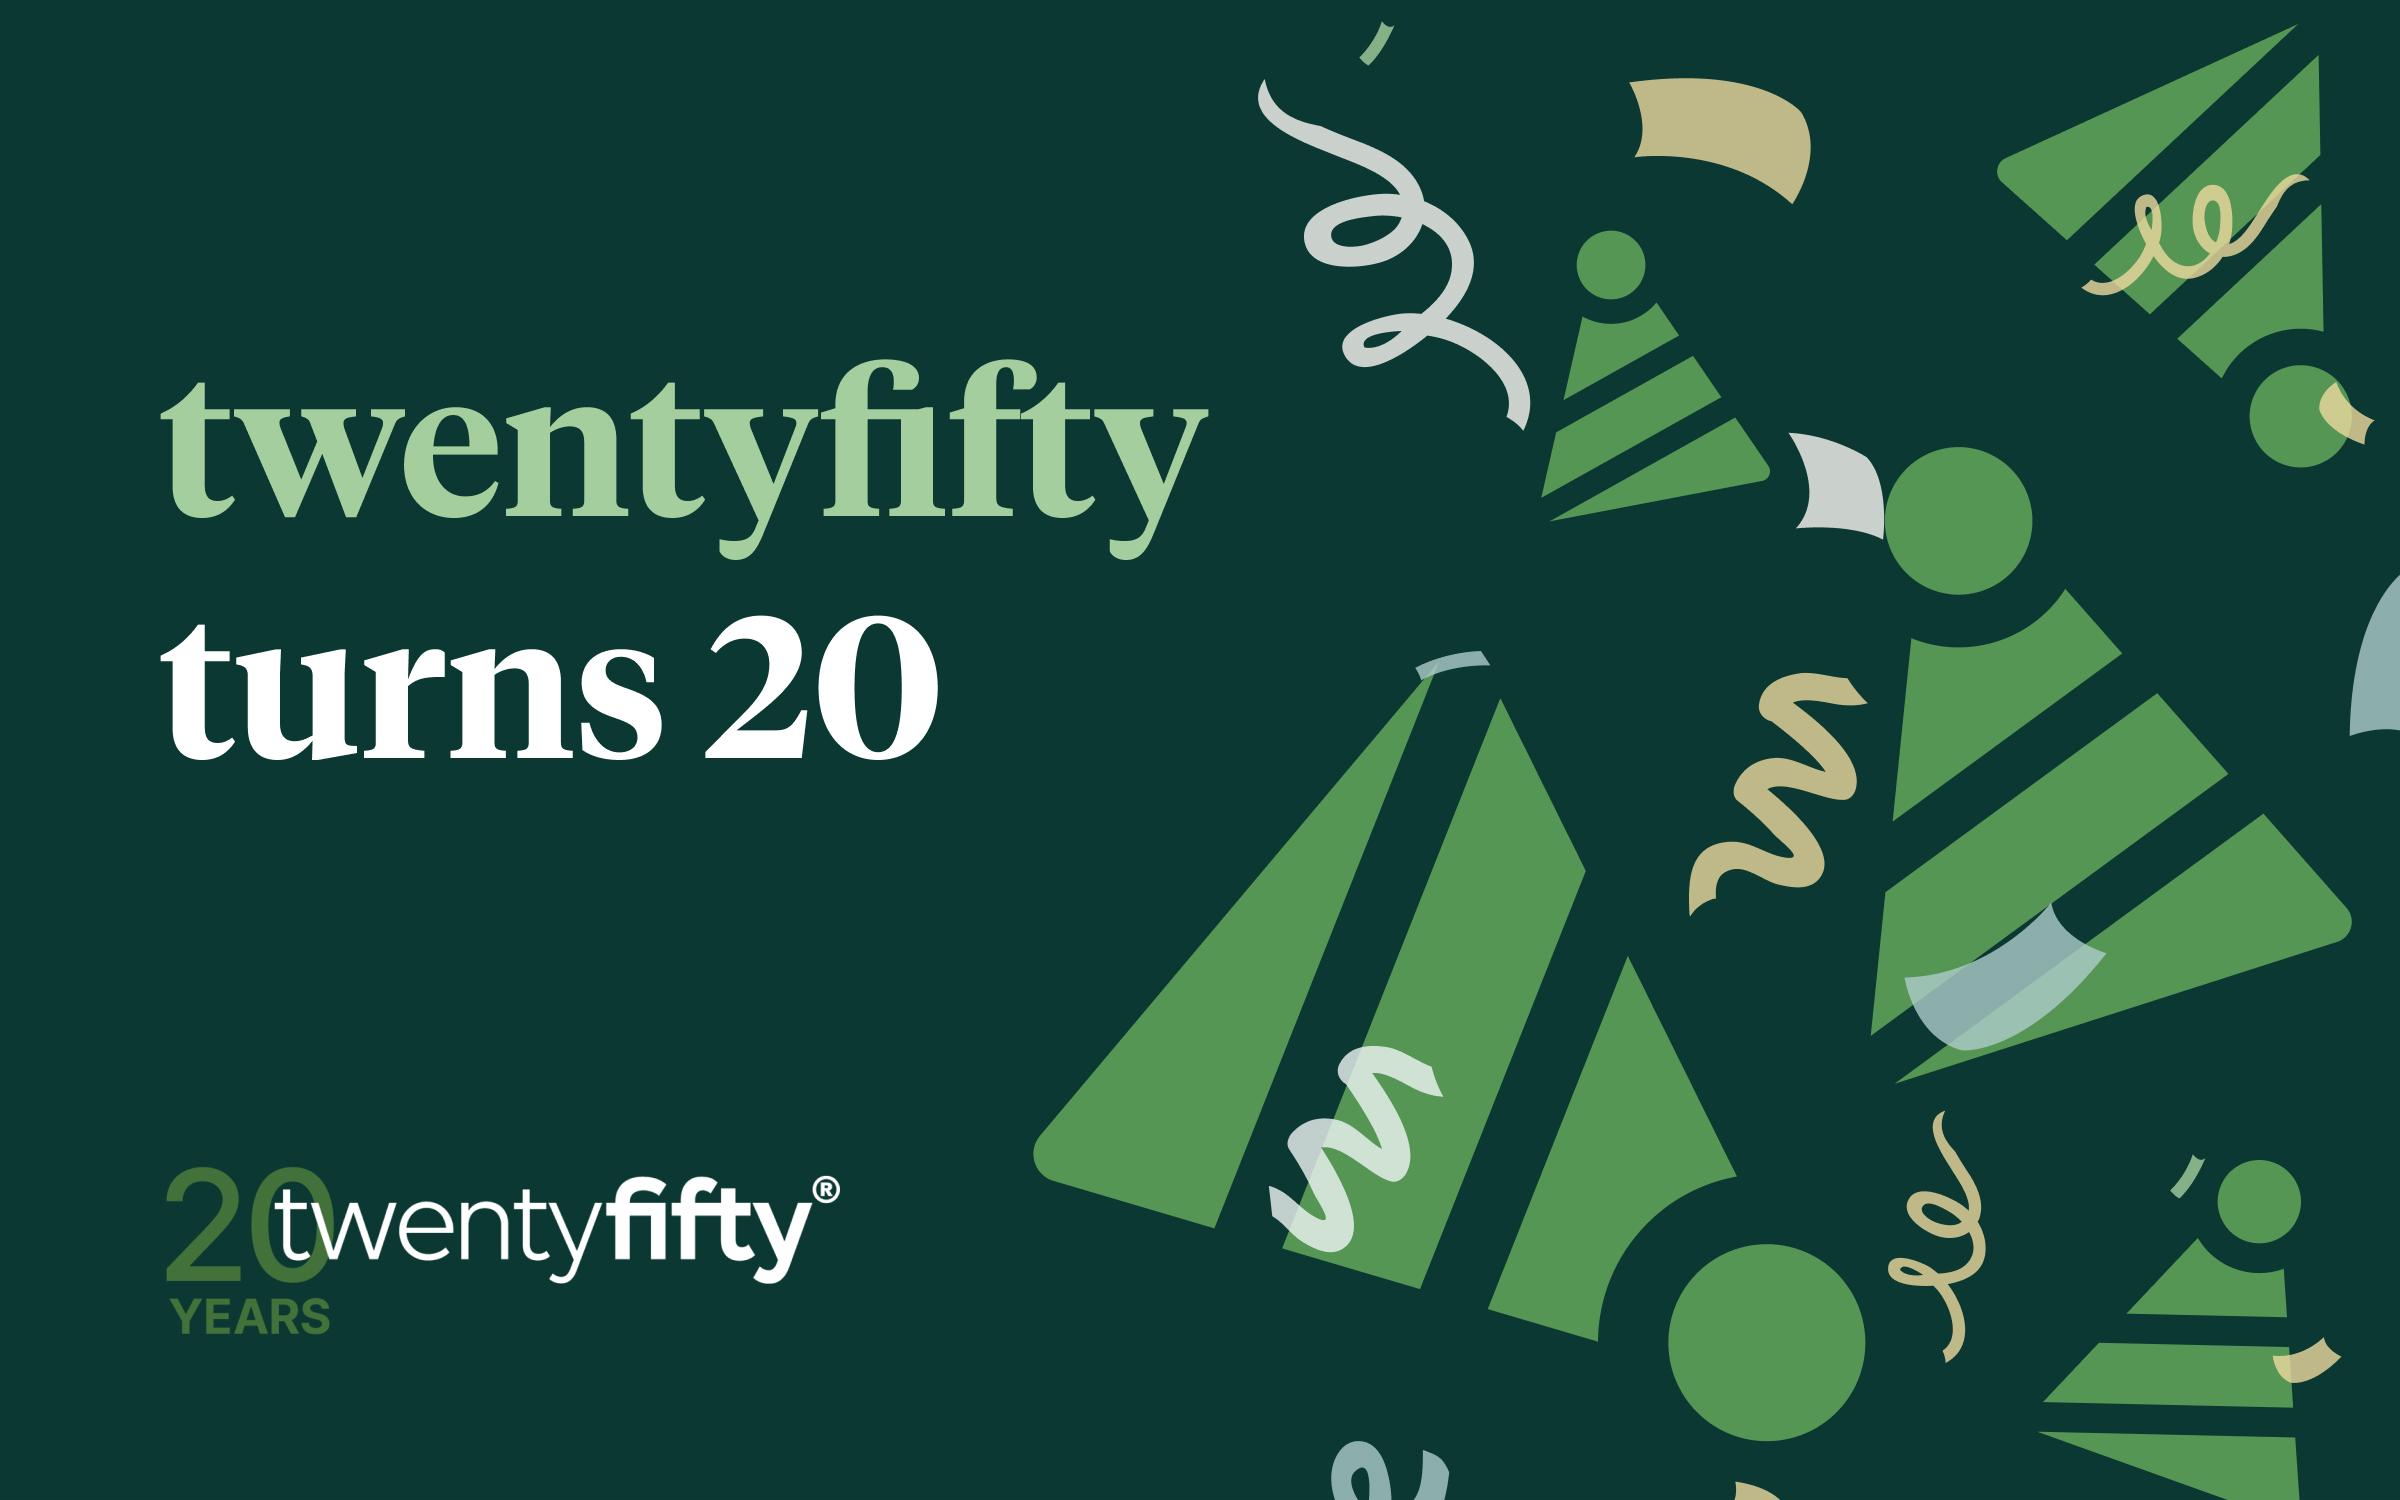 twentyfifty turns 20: Our story so far